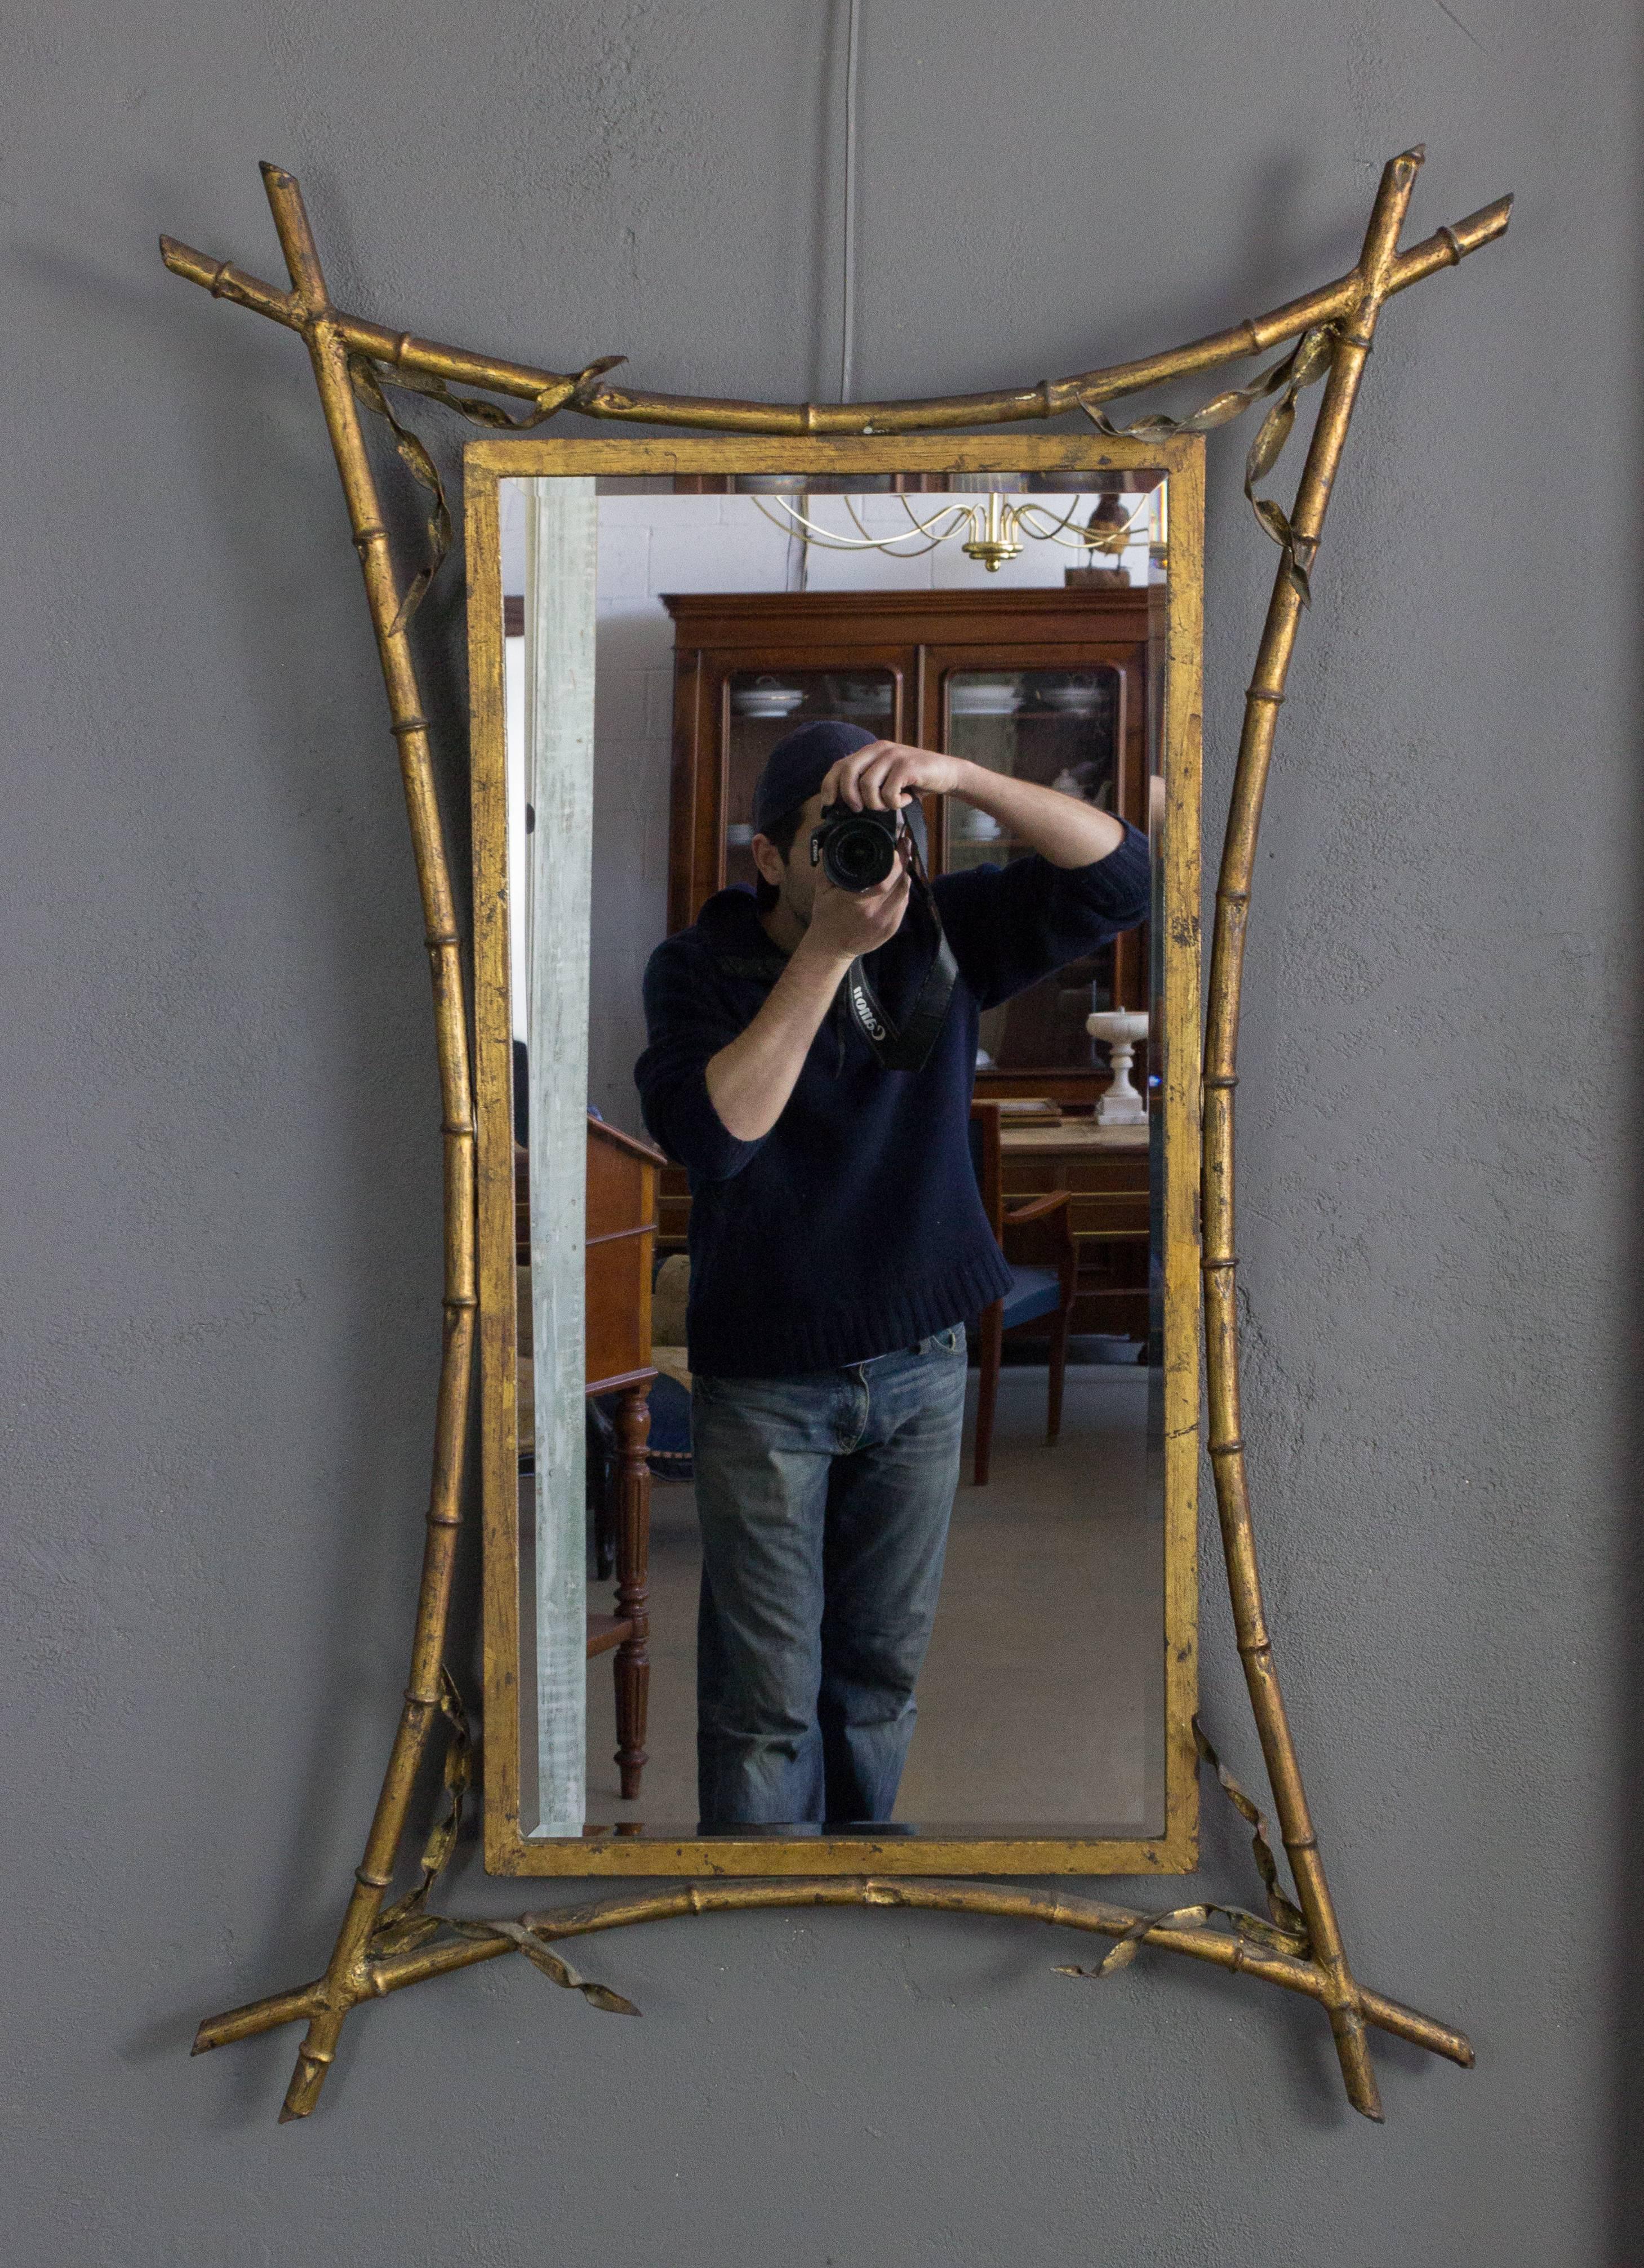 Französischer Spiegel aus vergoldetem Metall mit Bambusimitat. Vintage-Rahmen mit neuem Spiegel. Sehr guter Zustand.

Kennziffer: DM0400-11

Abmessungen: 44 